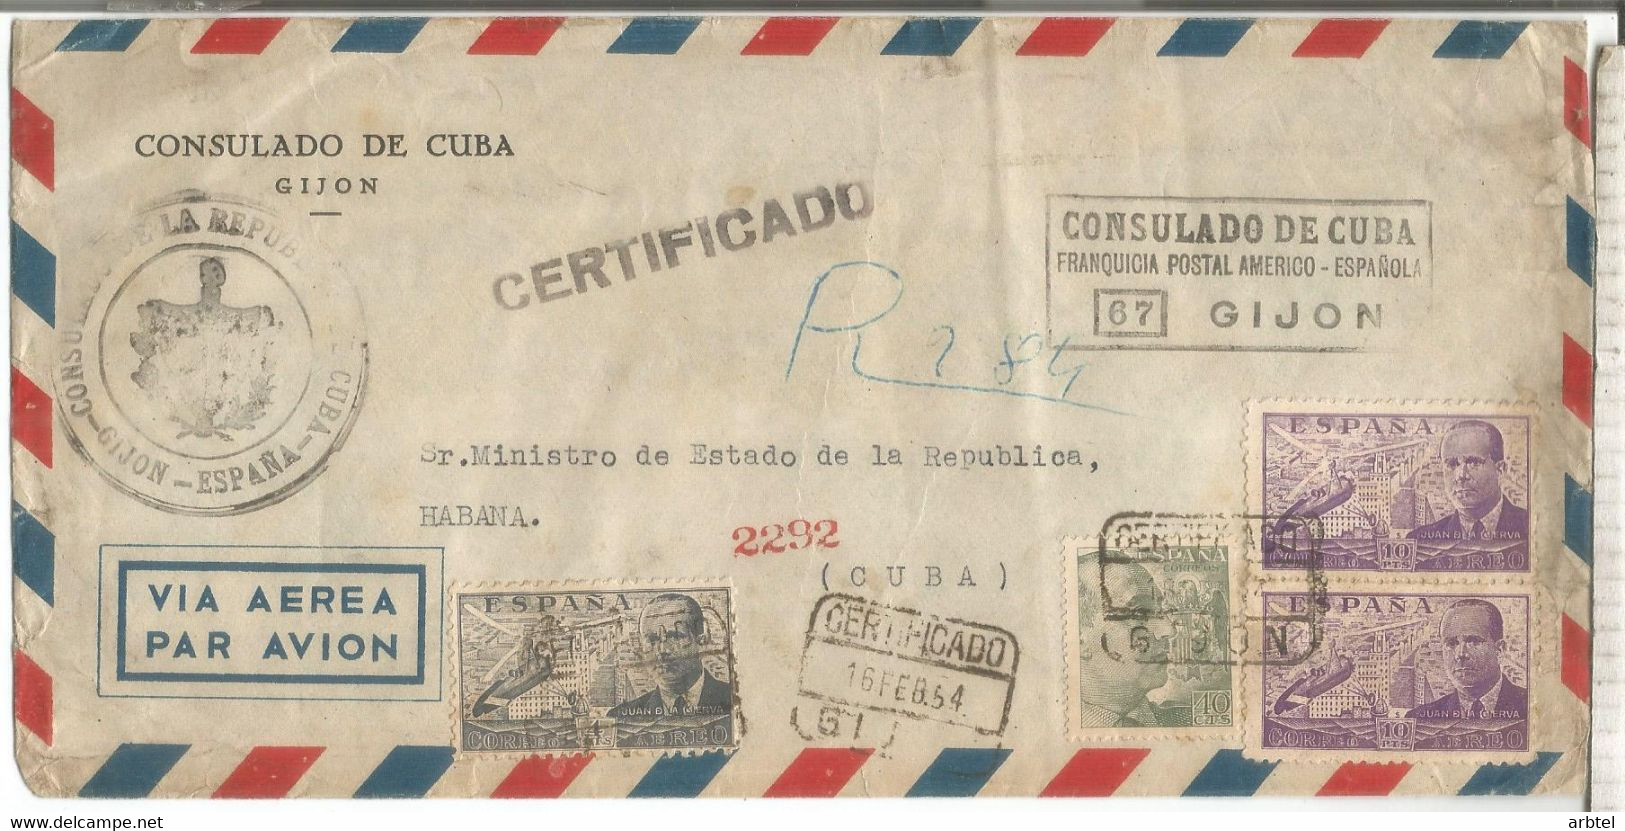 GIJON ASTURIAS 1954 CC CDA AEREA FRANQUICIA POSTAL AMERICO ESPAÑOLA CONSULADO DE CUBA ALTO FRANQUEO - Franquicia Postal